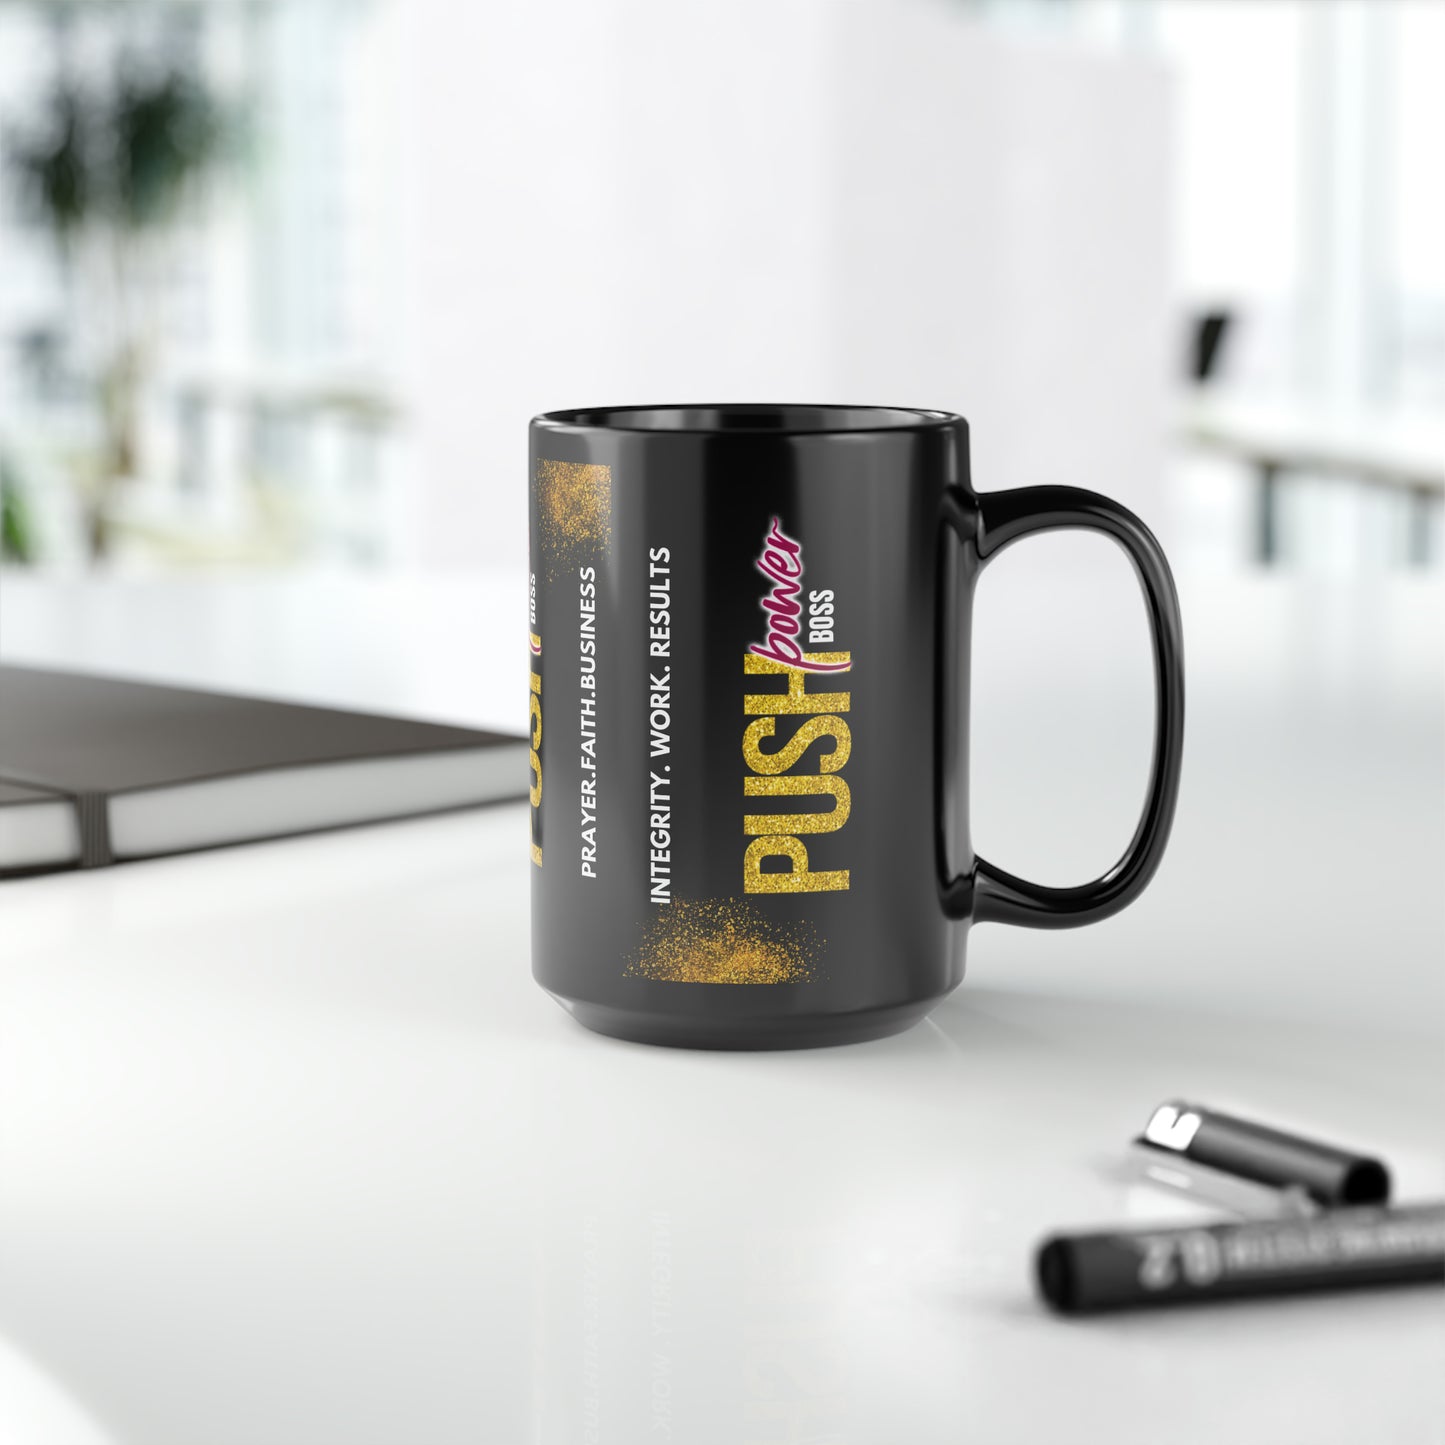 Push Power Boss Black Coffee/Tea Mug, 15oz